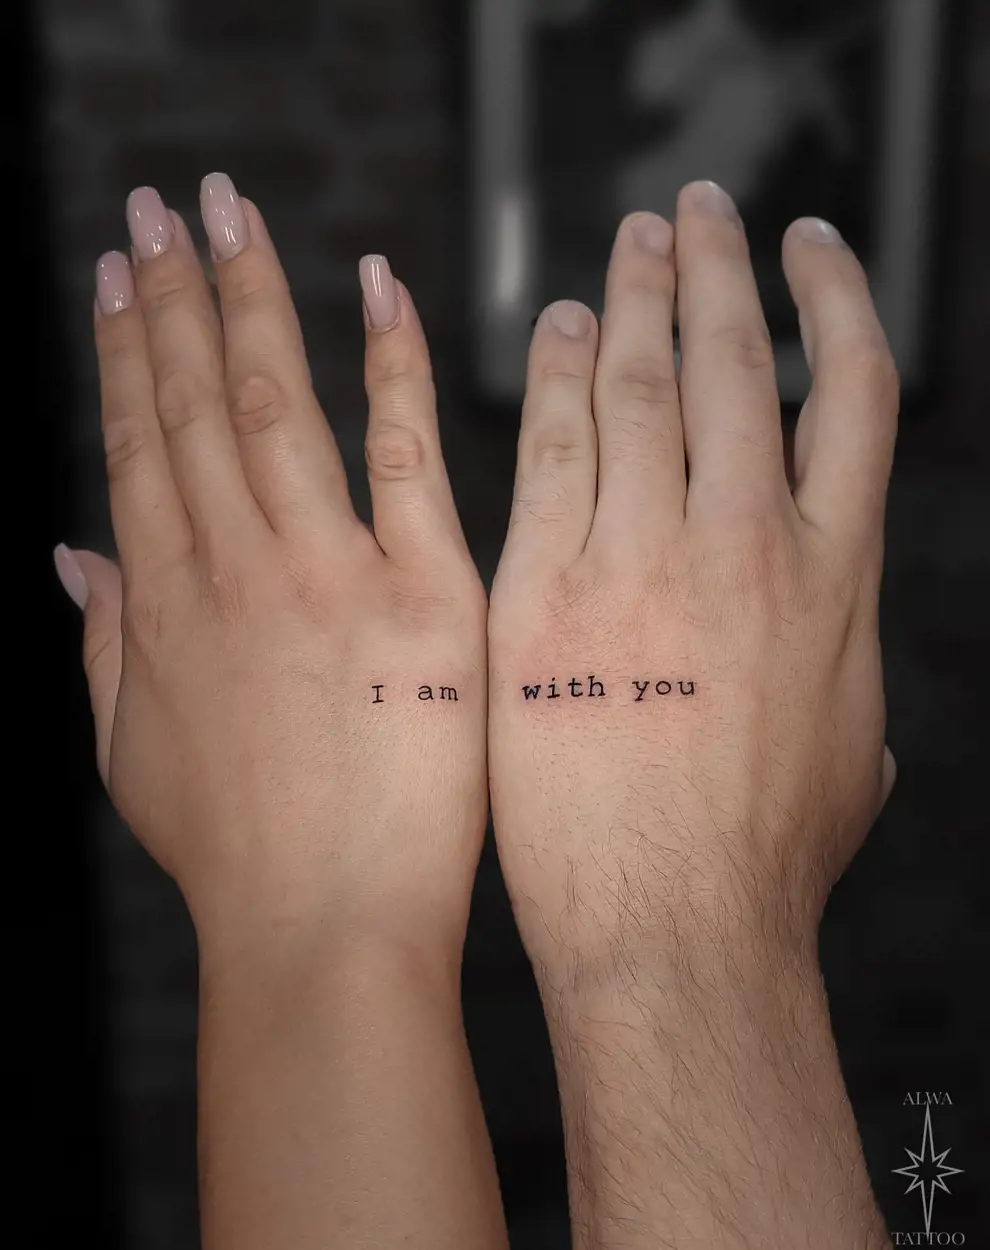 Tatuajes en pareja: una frase a medias